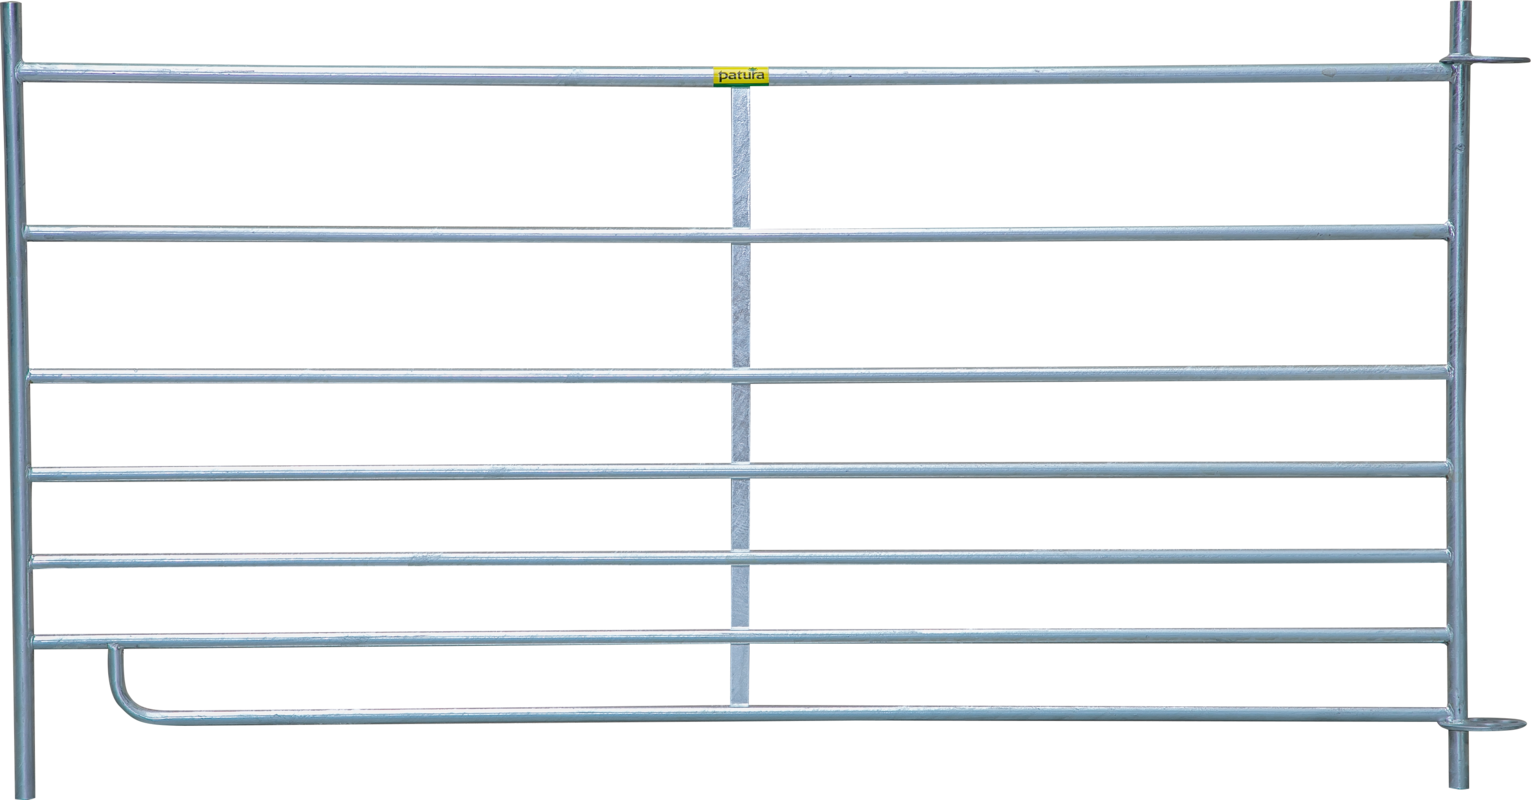 Steckfix-Hurdle, 7 bars, 1.83 m, h = 0.92 m